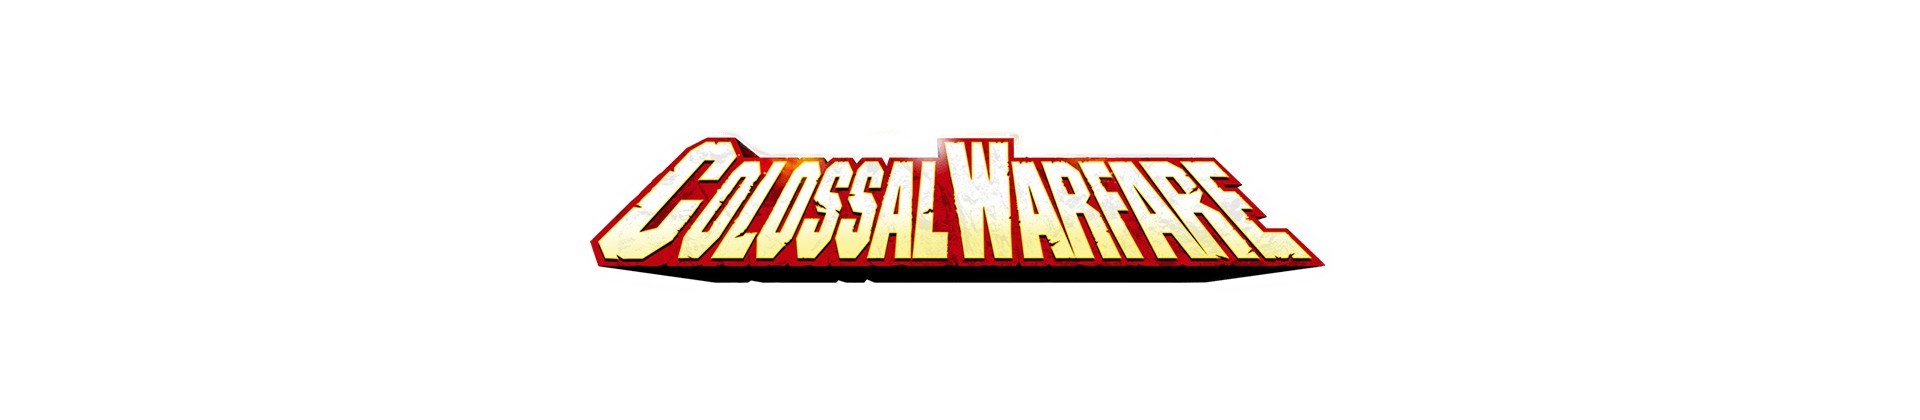 B04 : Colossal Warfare